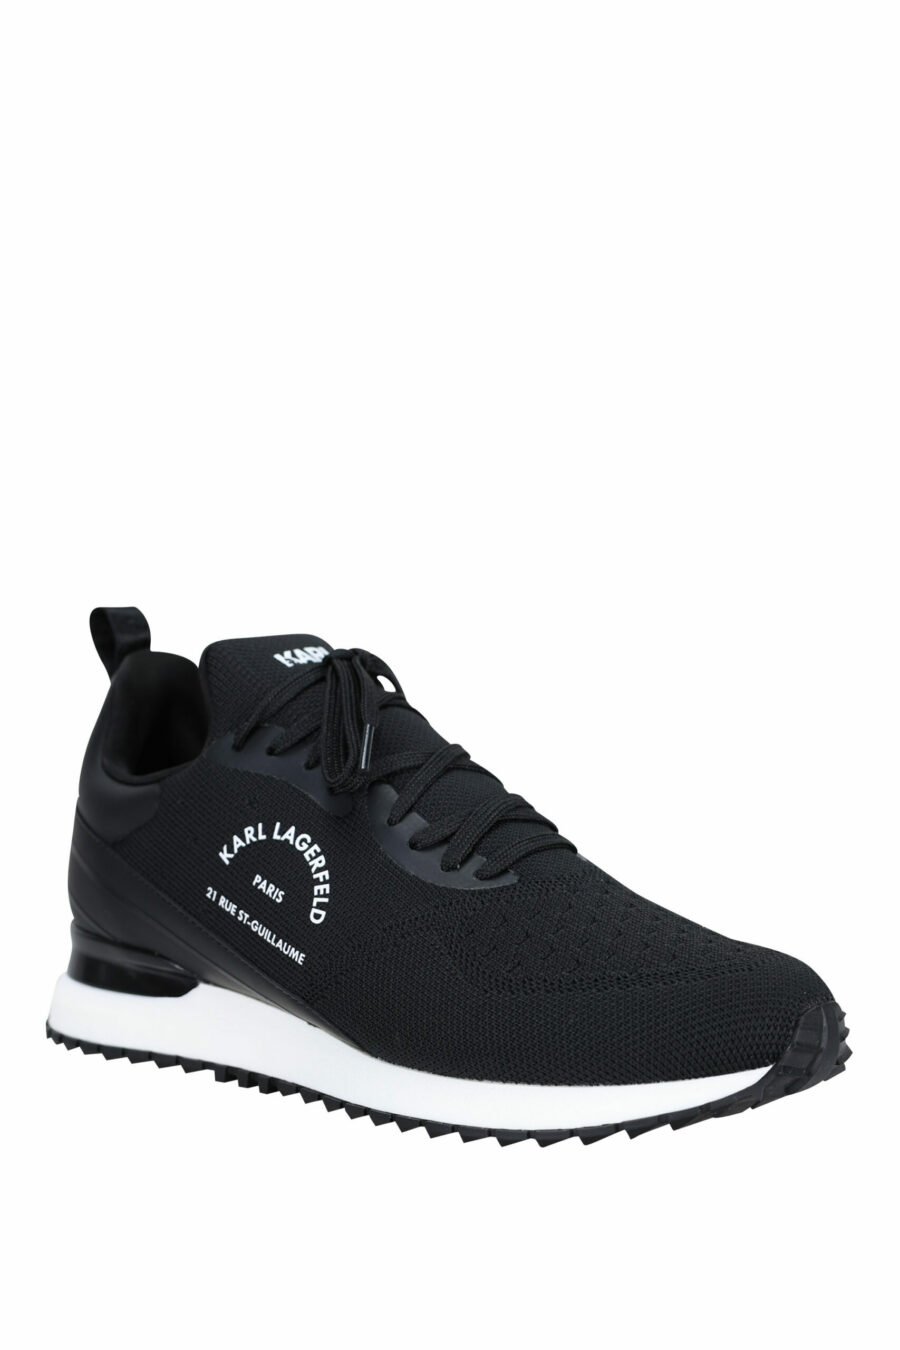 Zapatillas negras "velocitor" con logo "rue st guillaume" blanco - 5059529326370 1 scaled